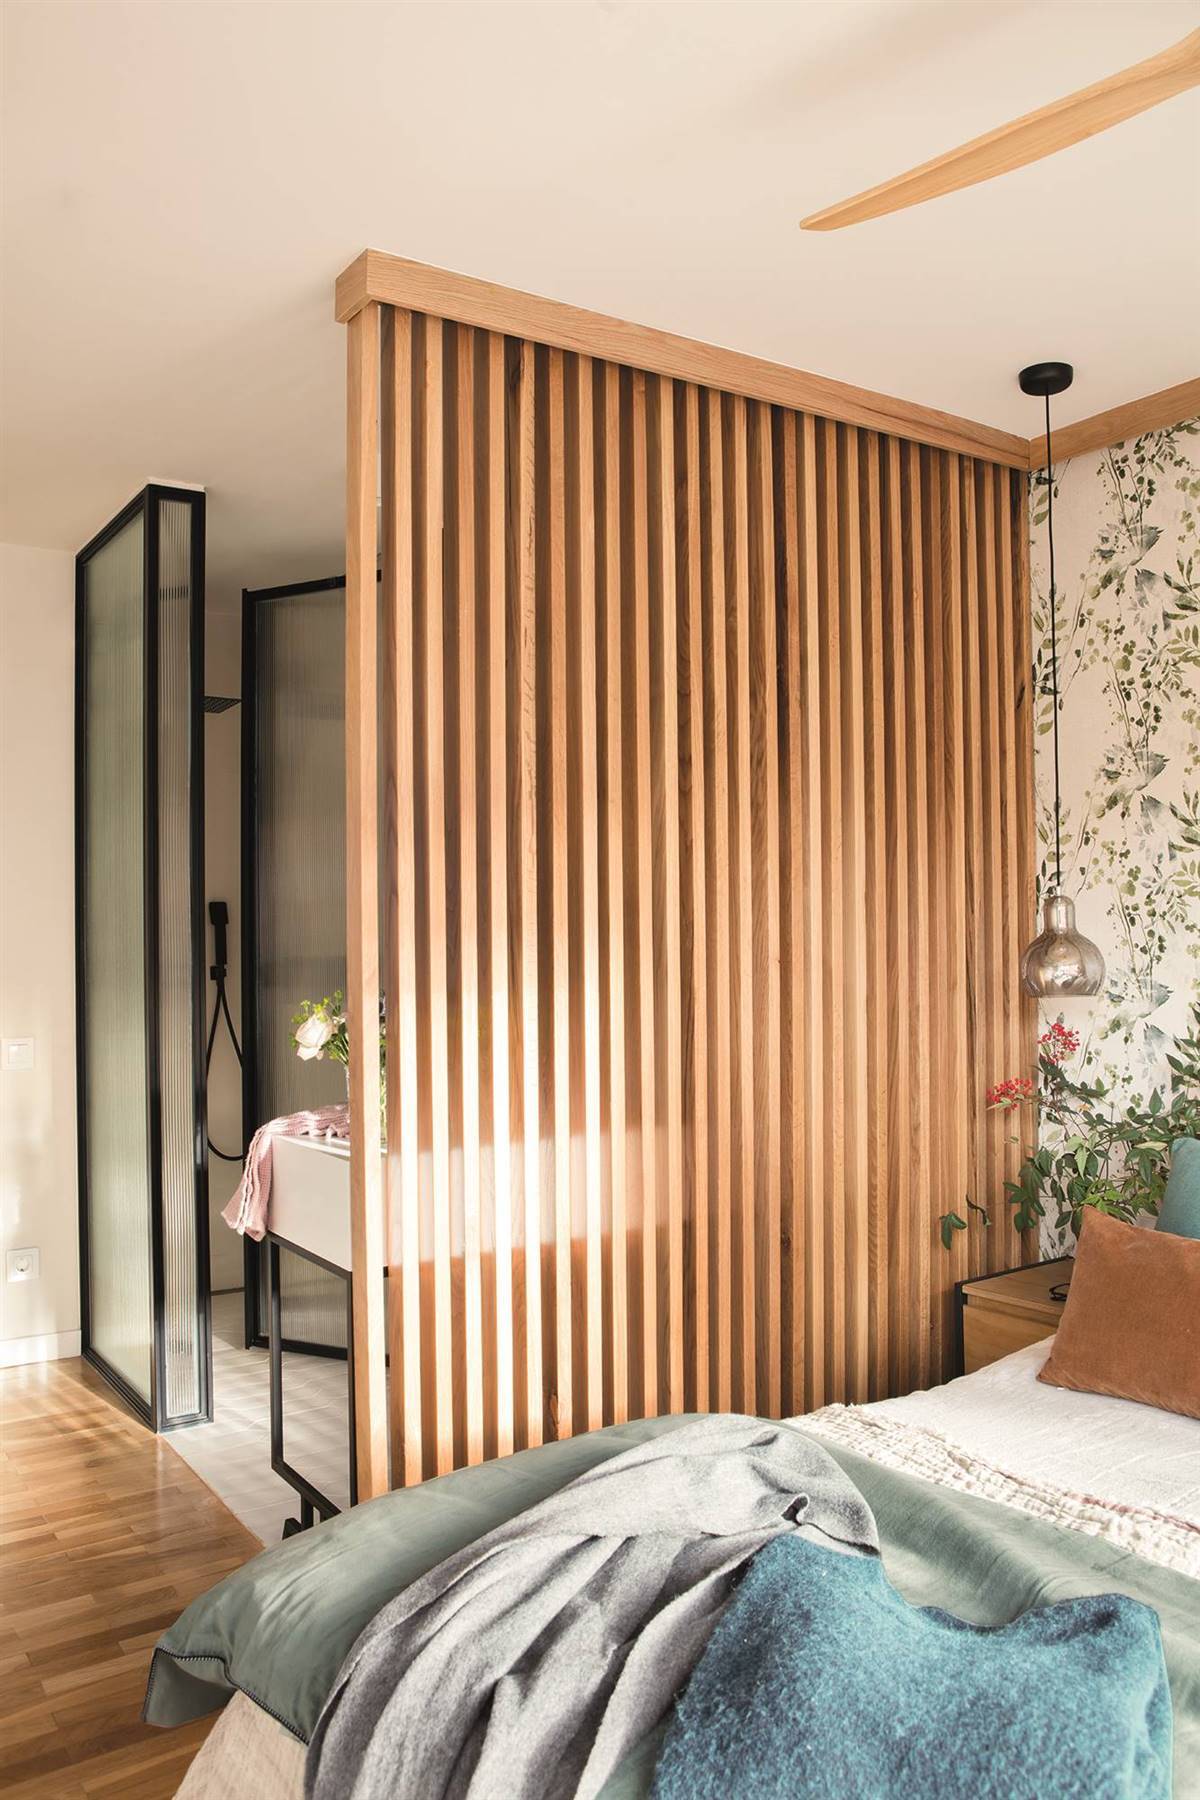 Dormitorio con celosía de madera que separa del baño